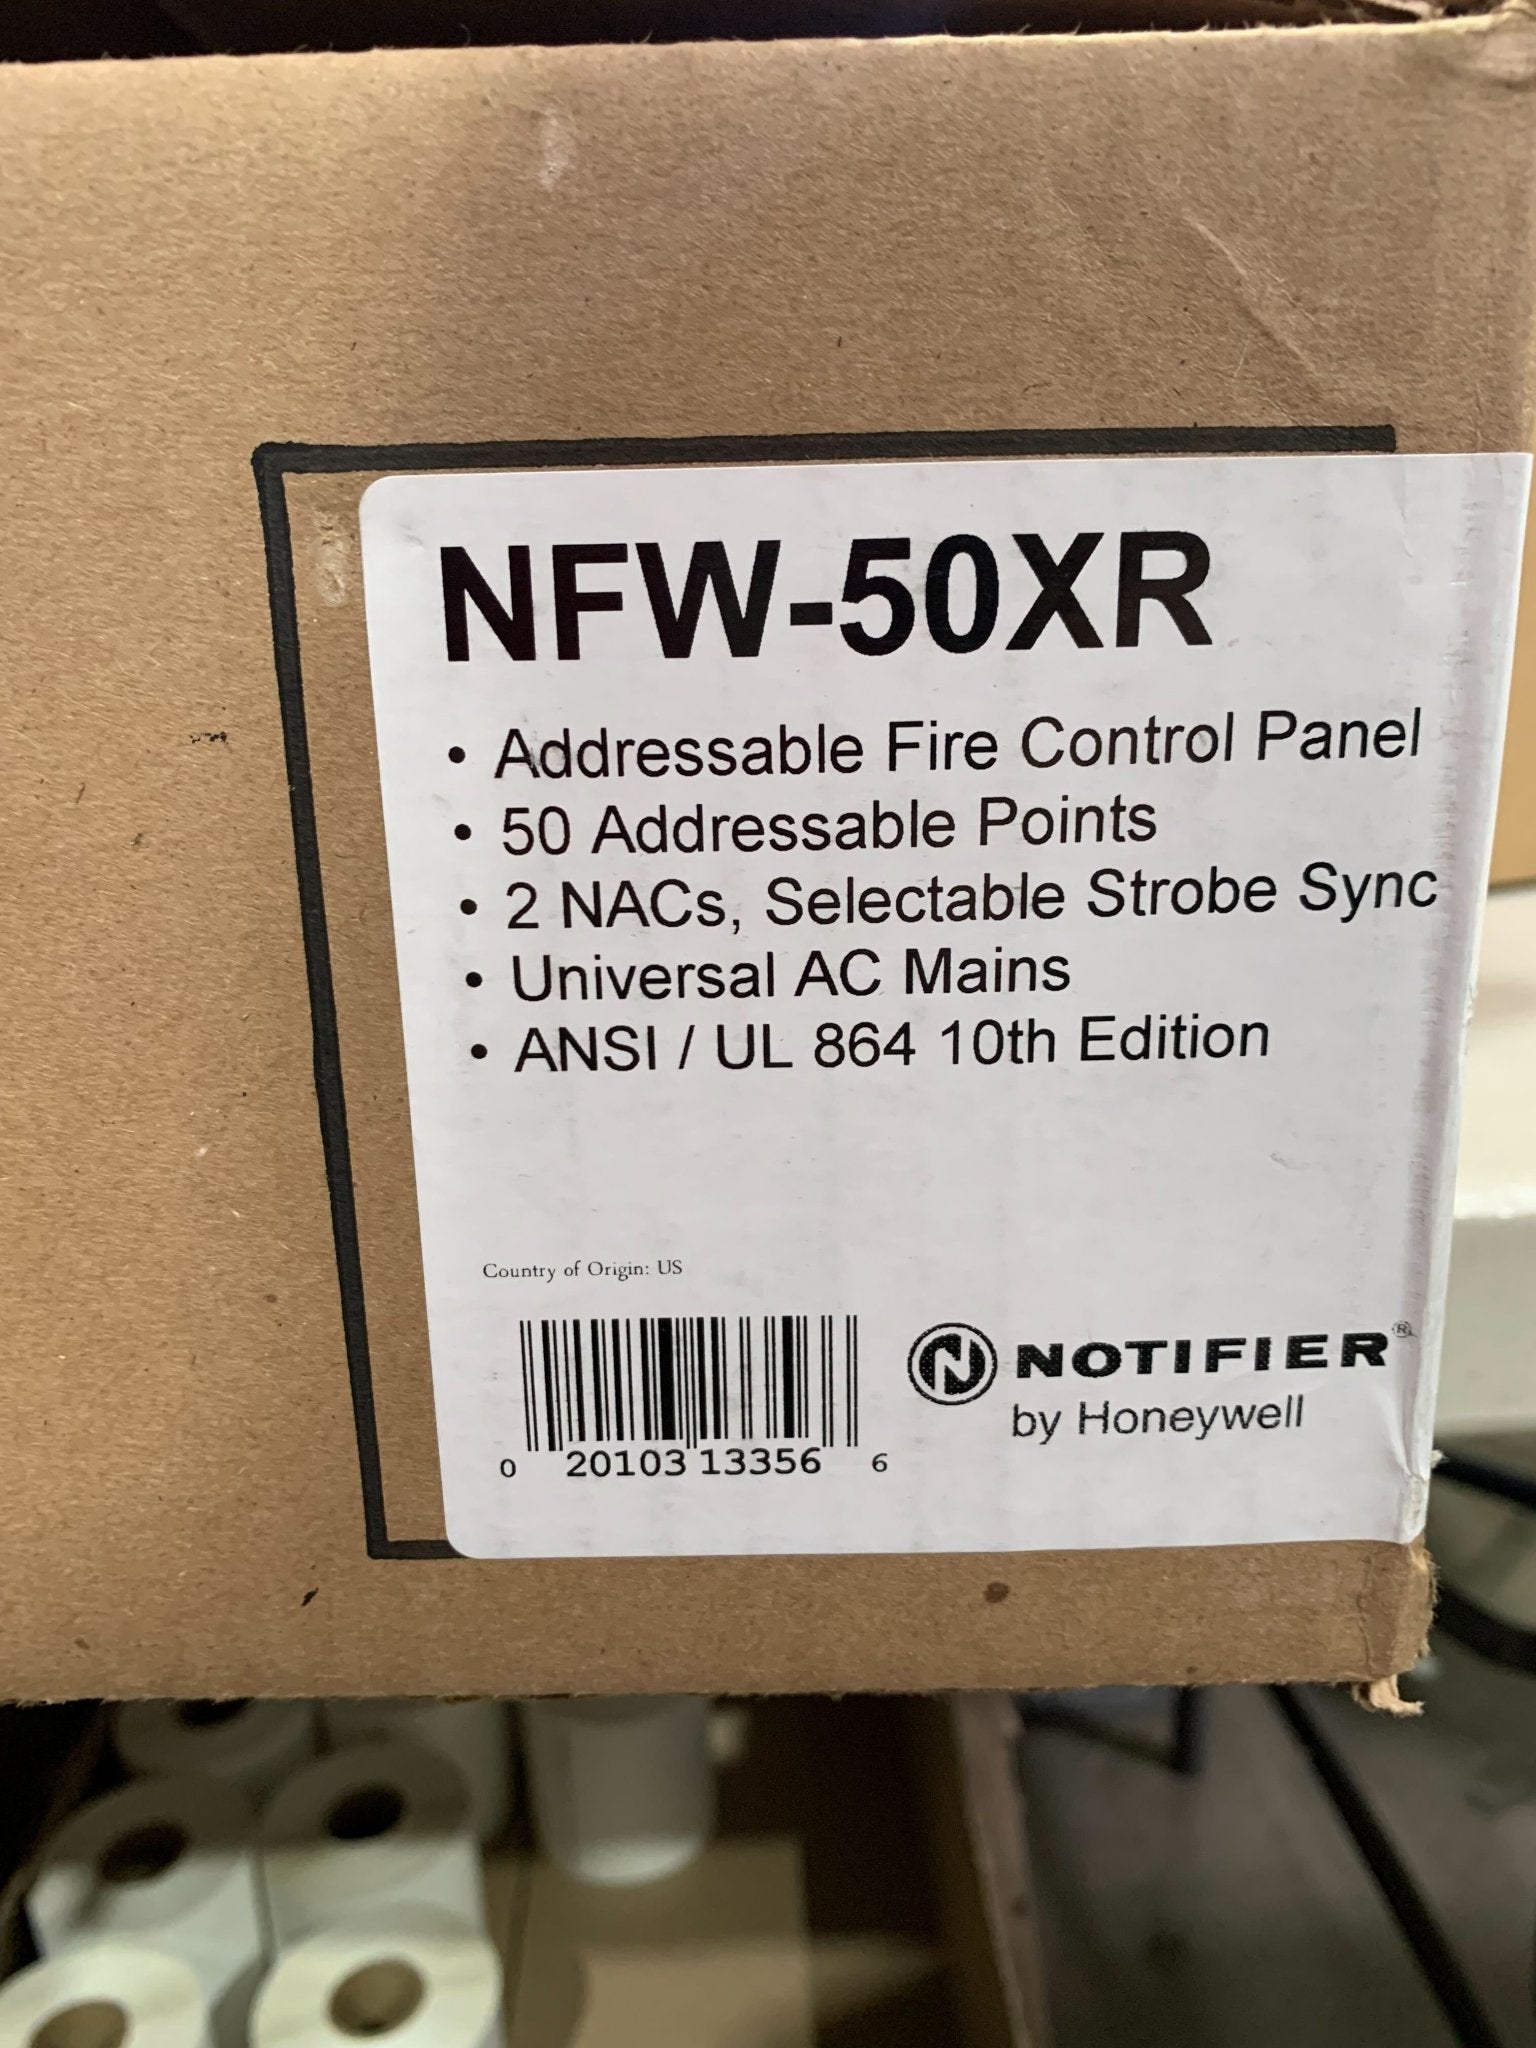 Notifier NFW-50XR - The Fire Alarm Supplier